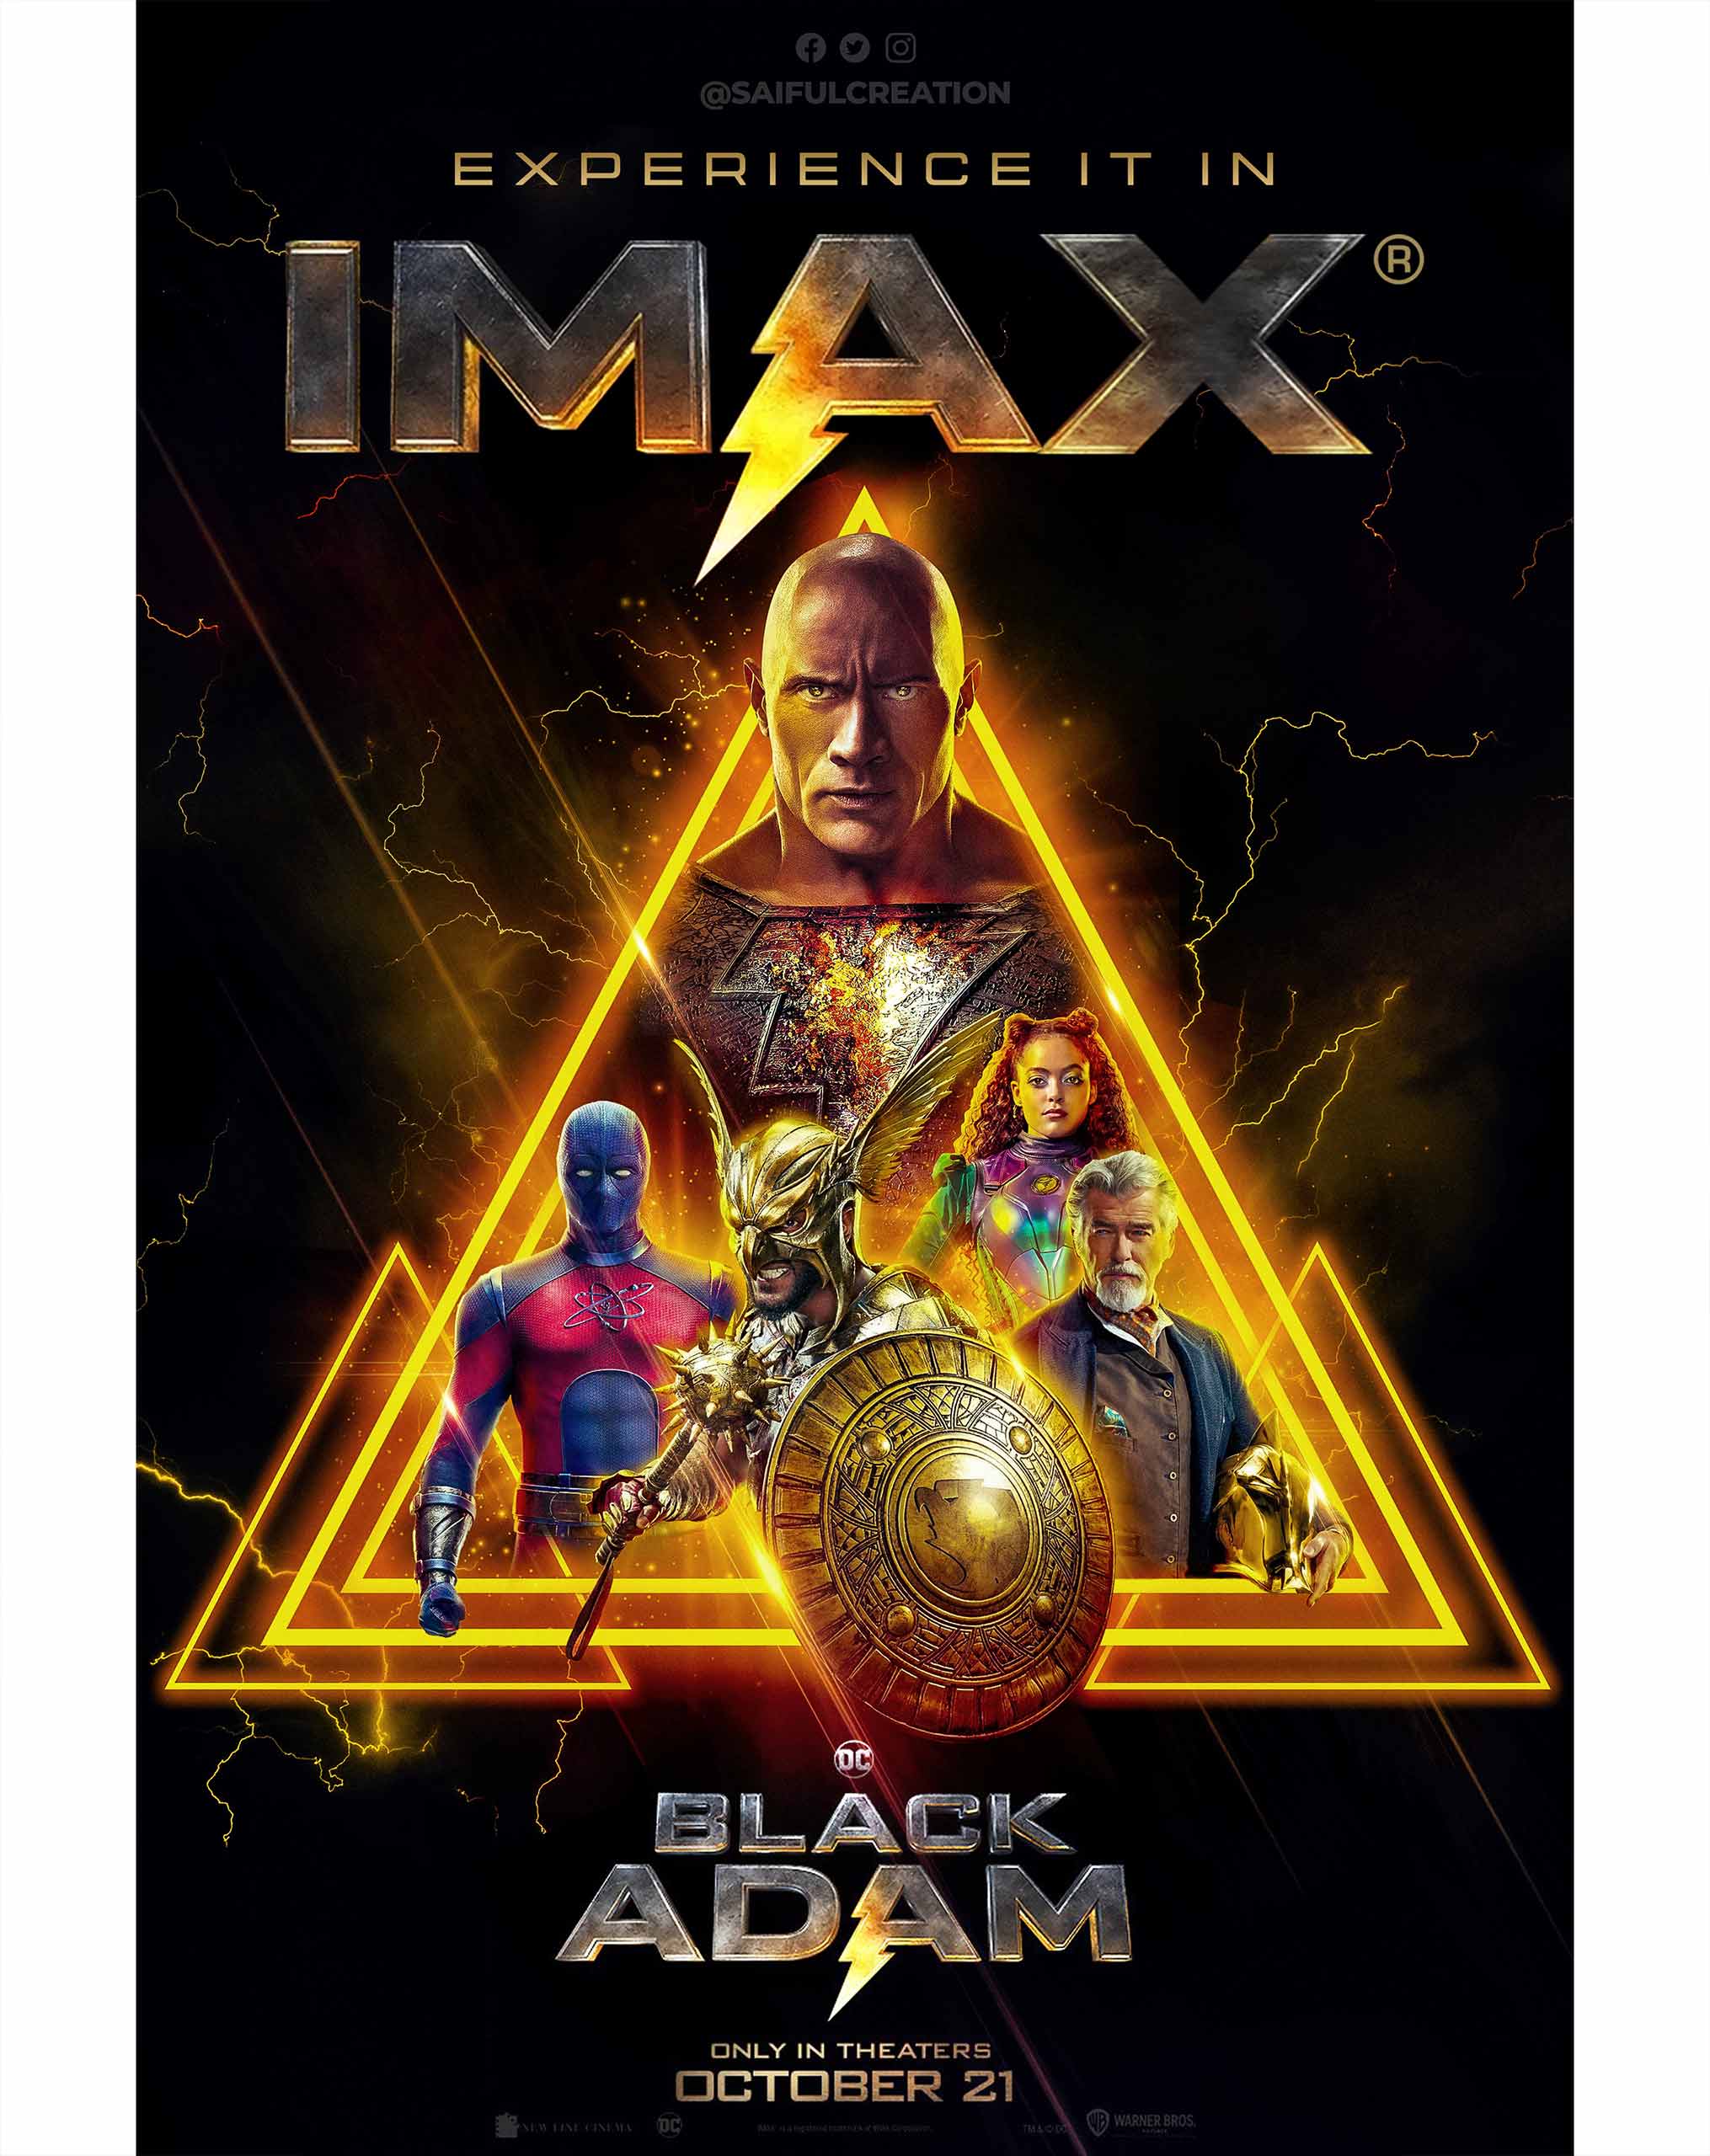 Black Adam IMAX Poster Design